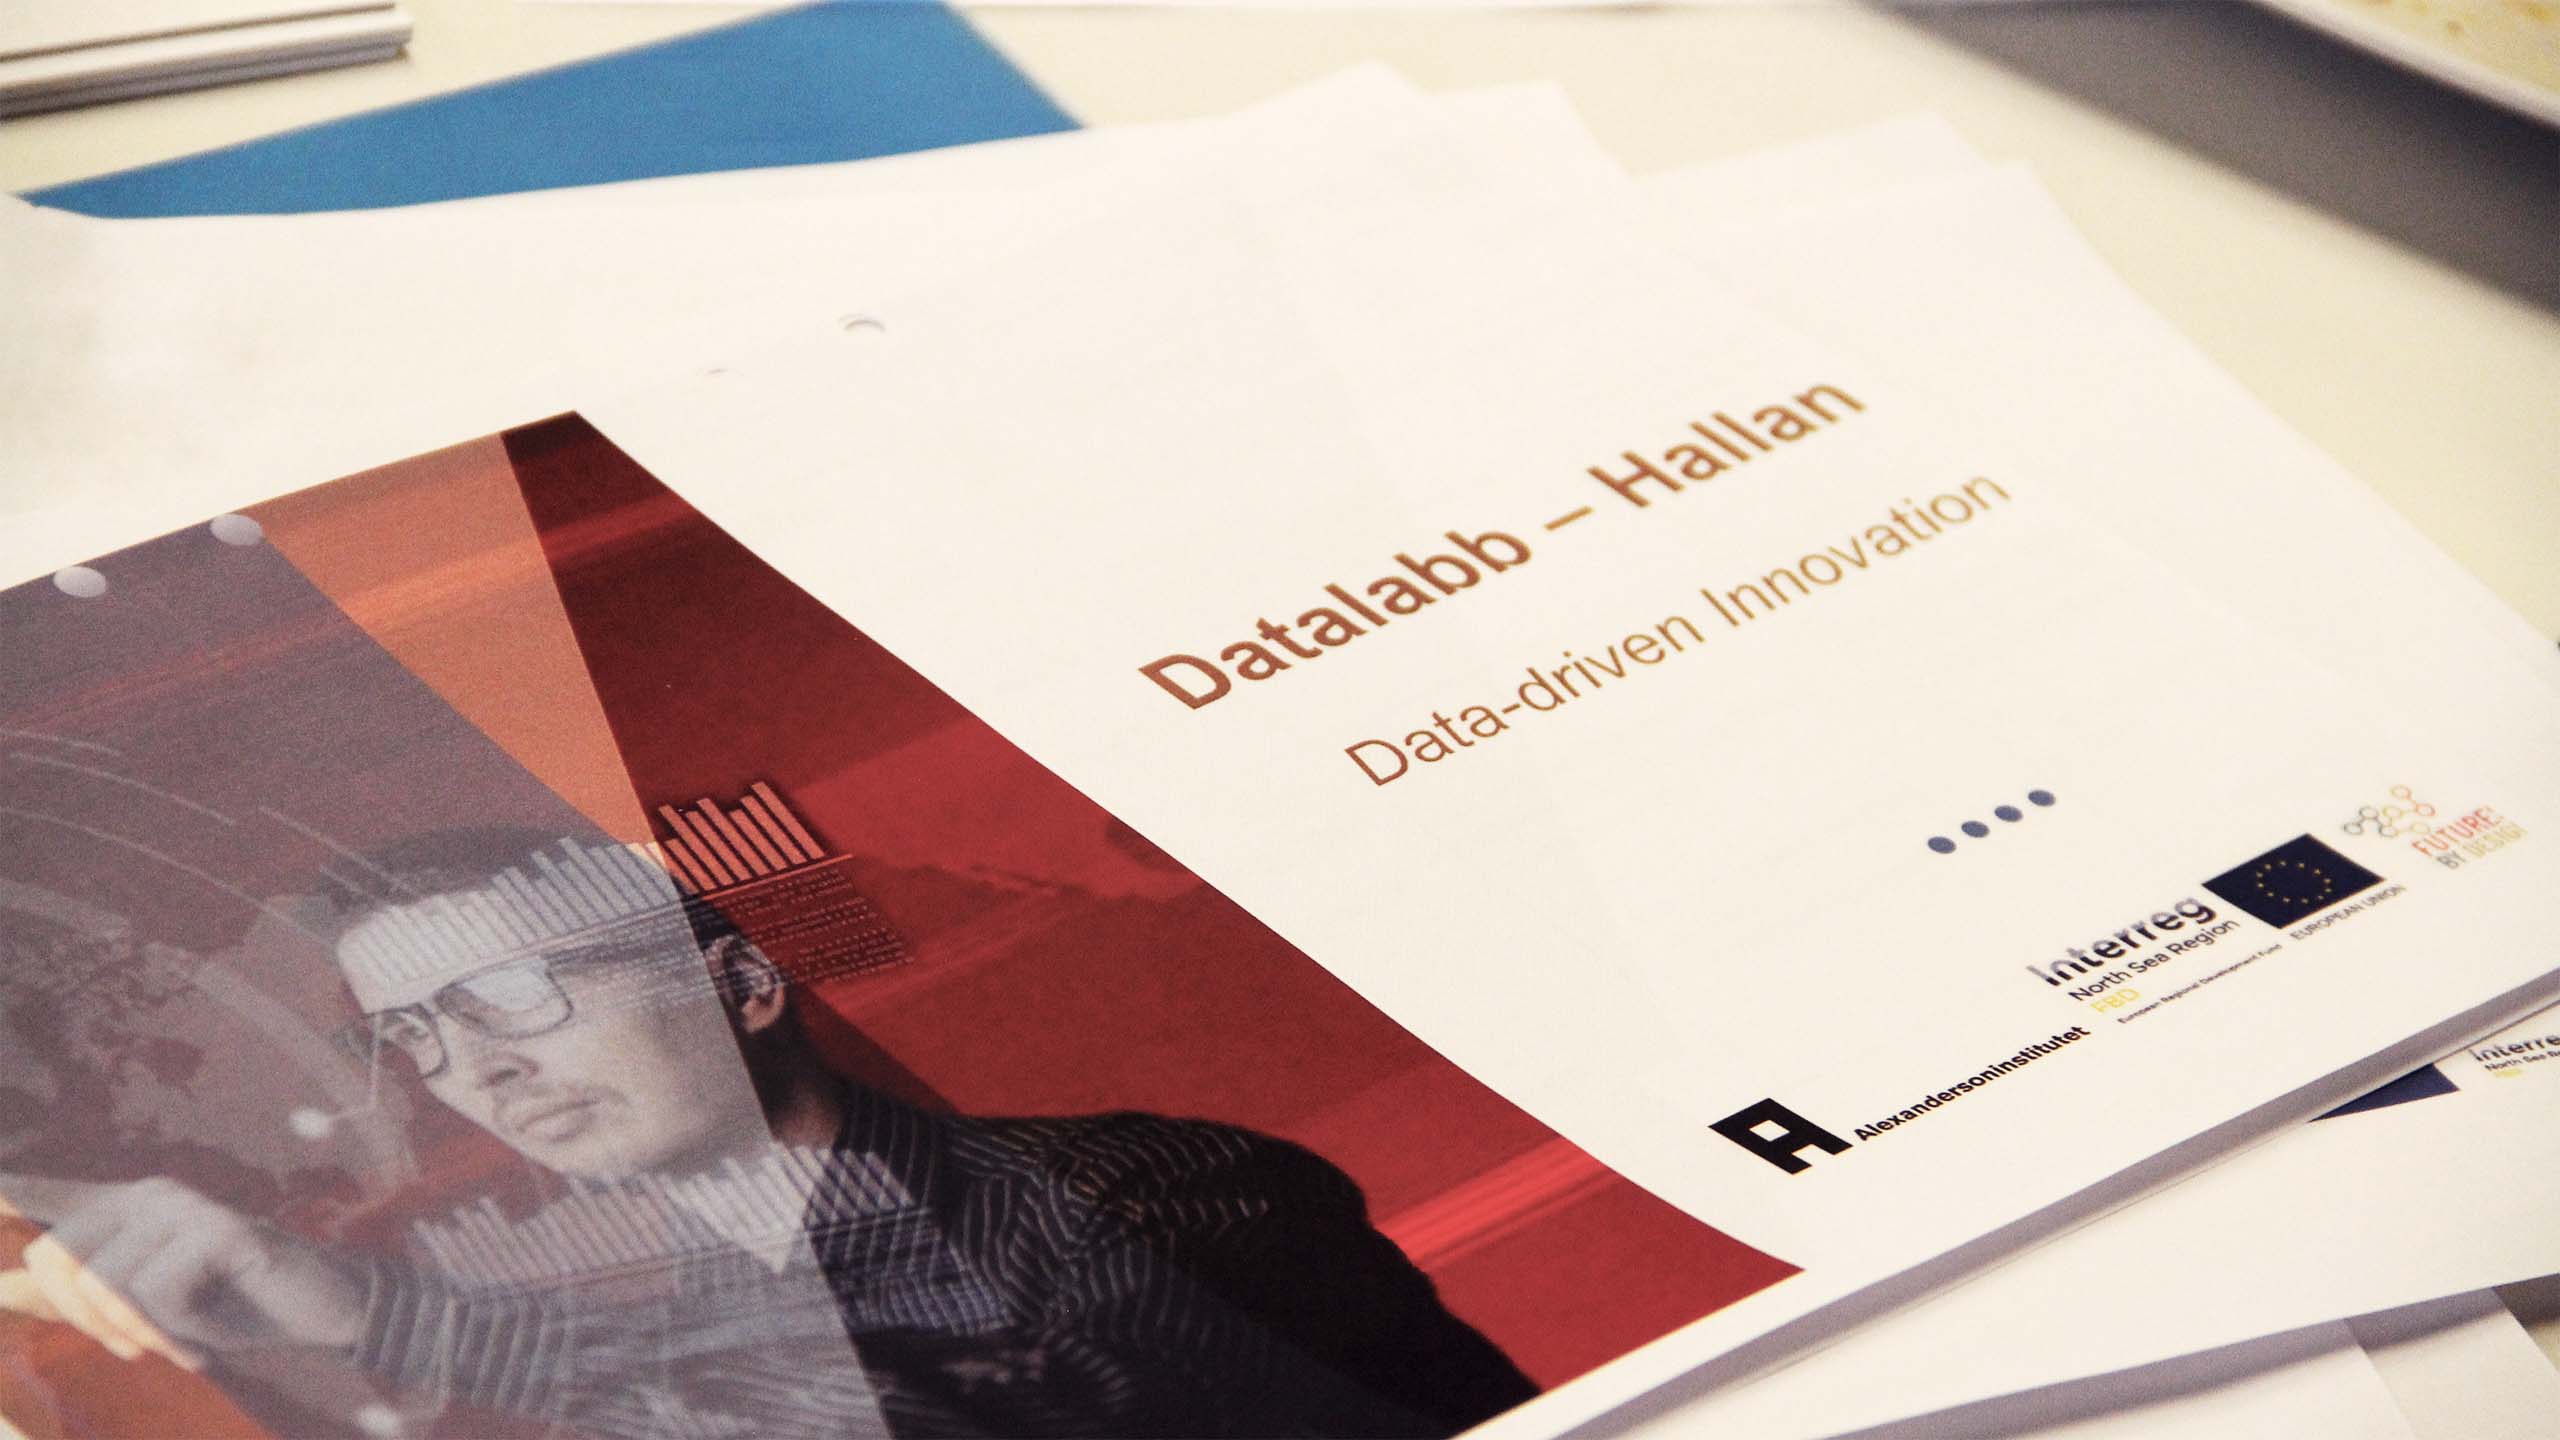 Papper med texten Datalabb Halland, datadriven innovation.